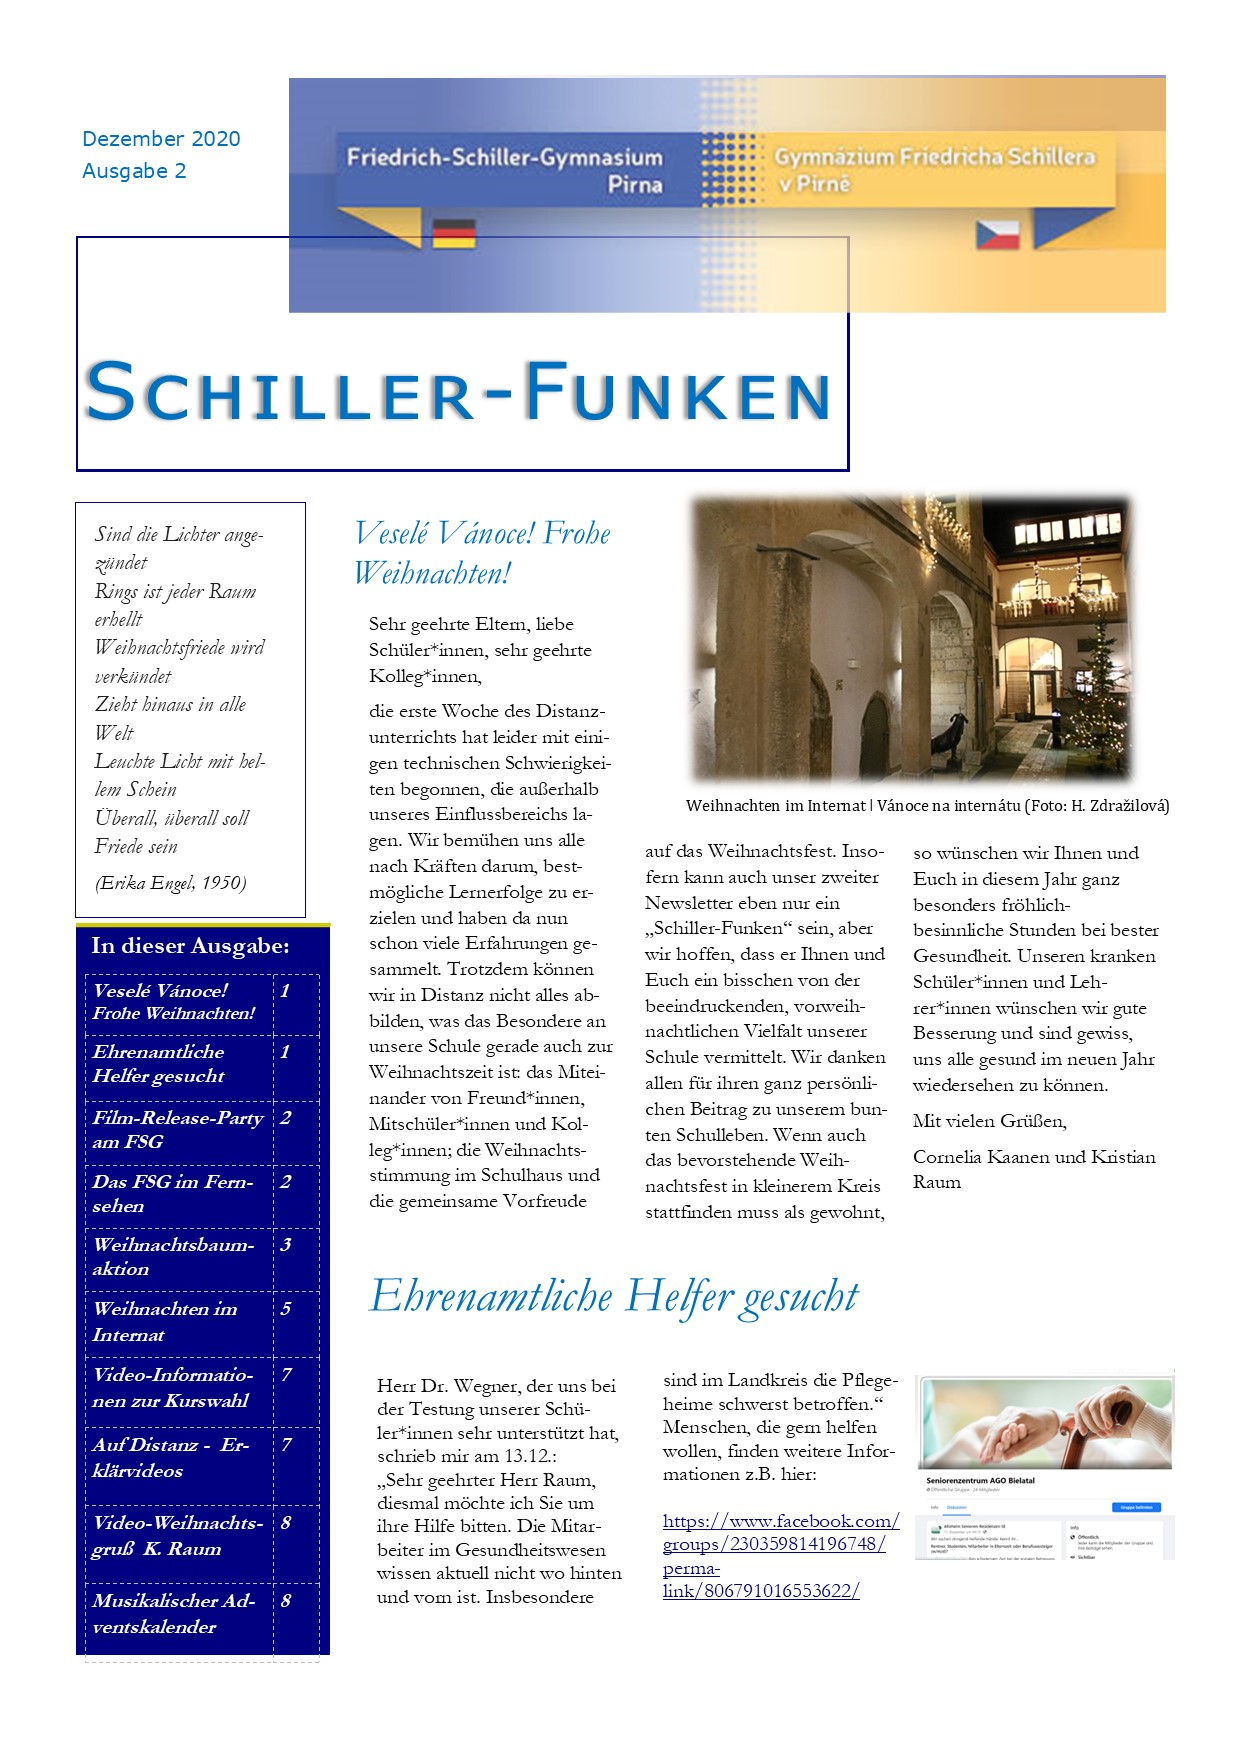 Schiller-Funken 2